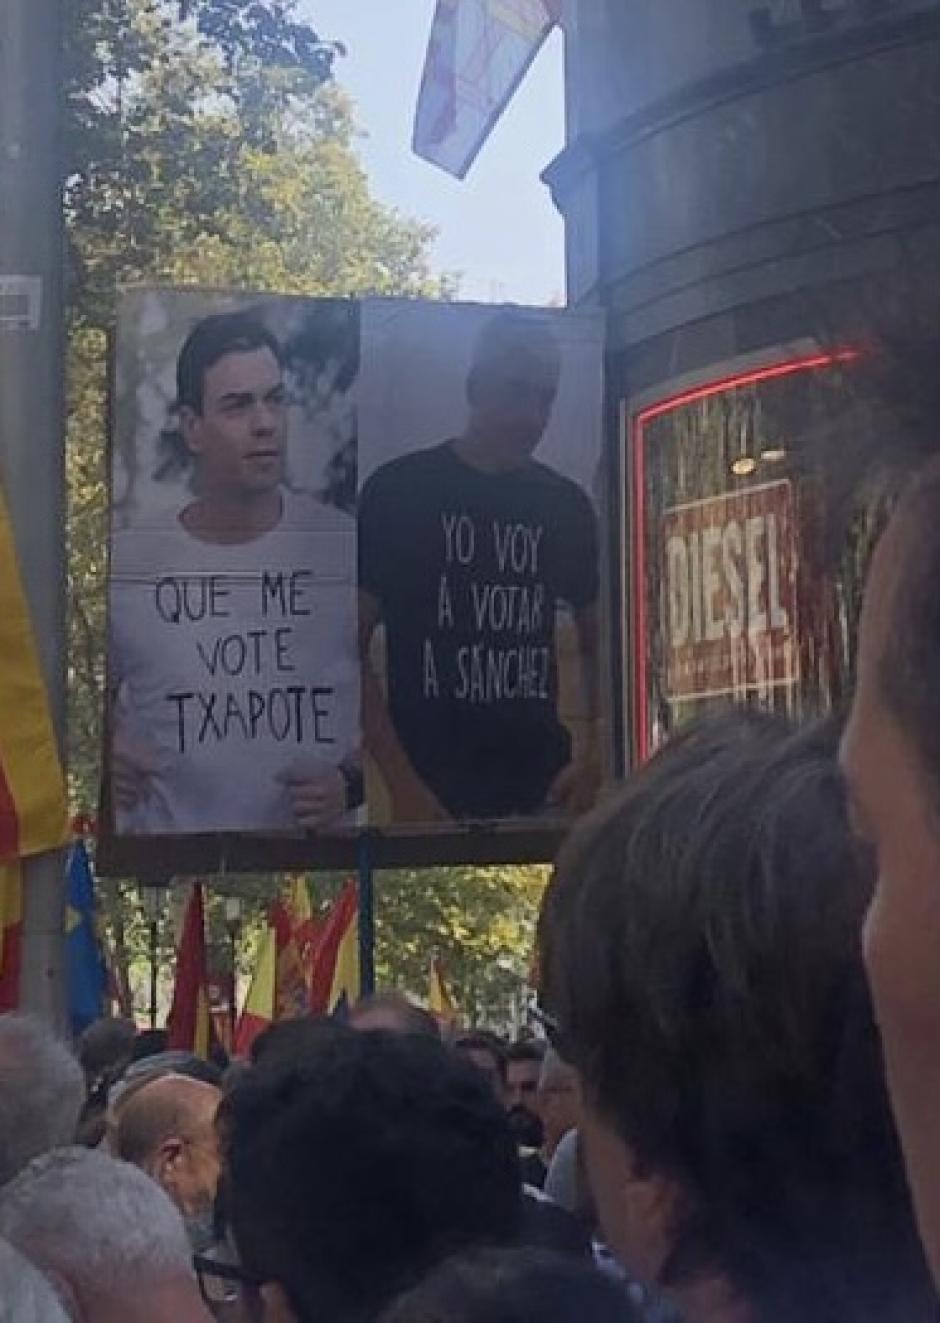 Cartel sobre Pedro Sánchez y Txapote mostrado en la manifestación de Barcelona.